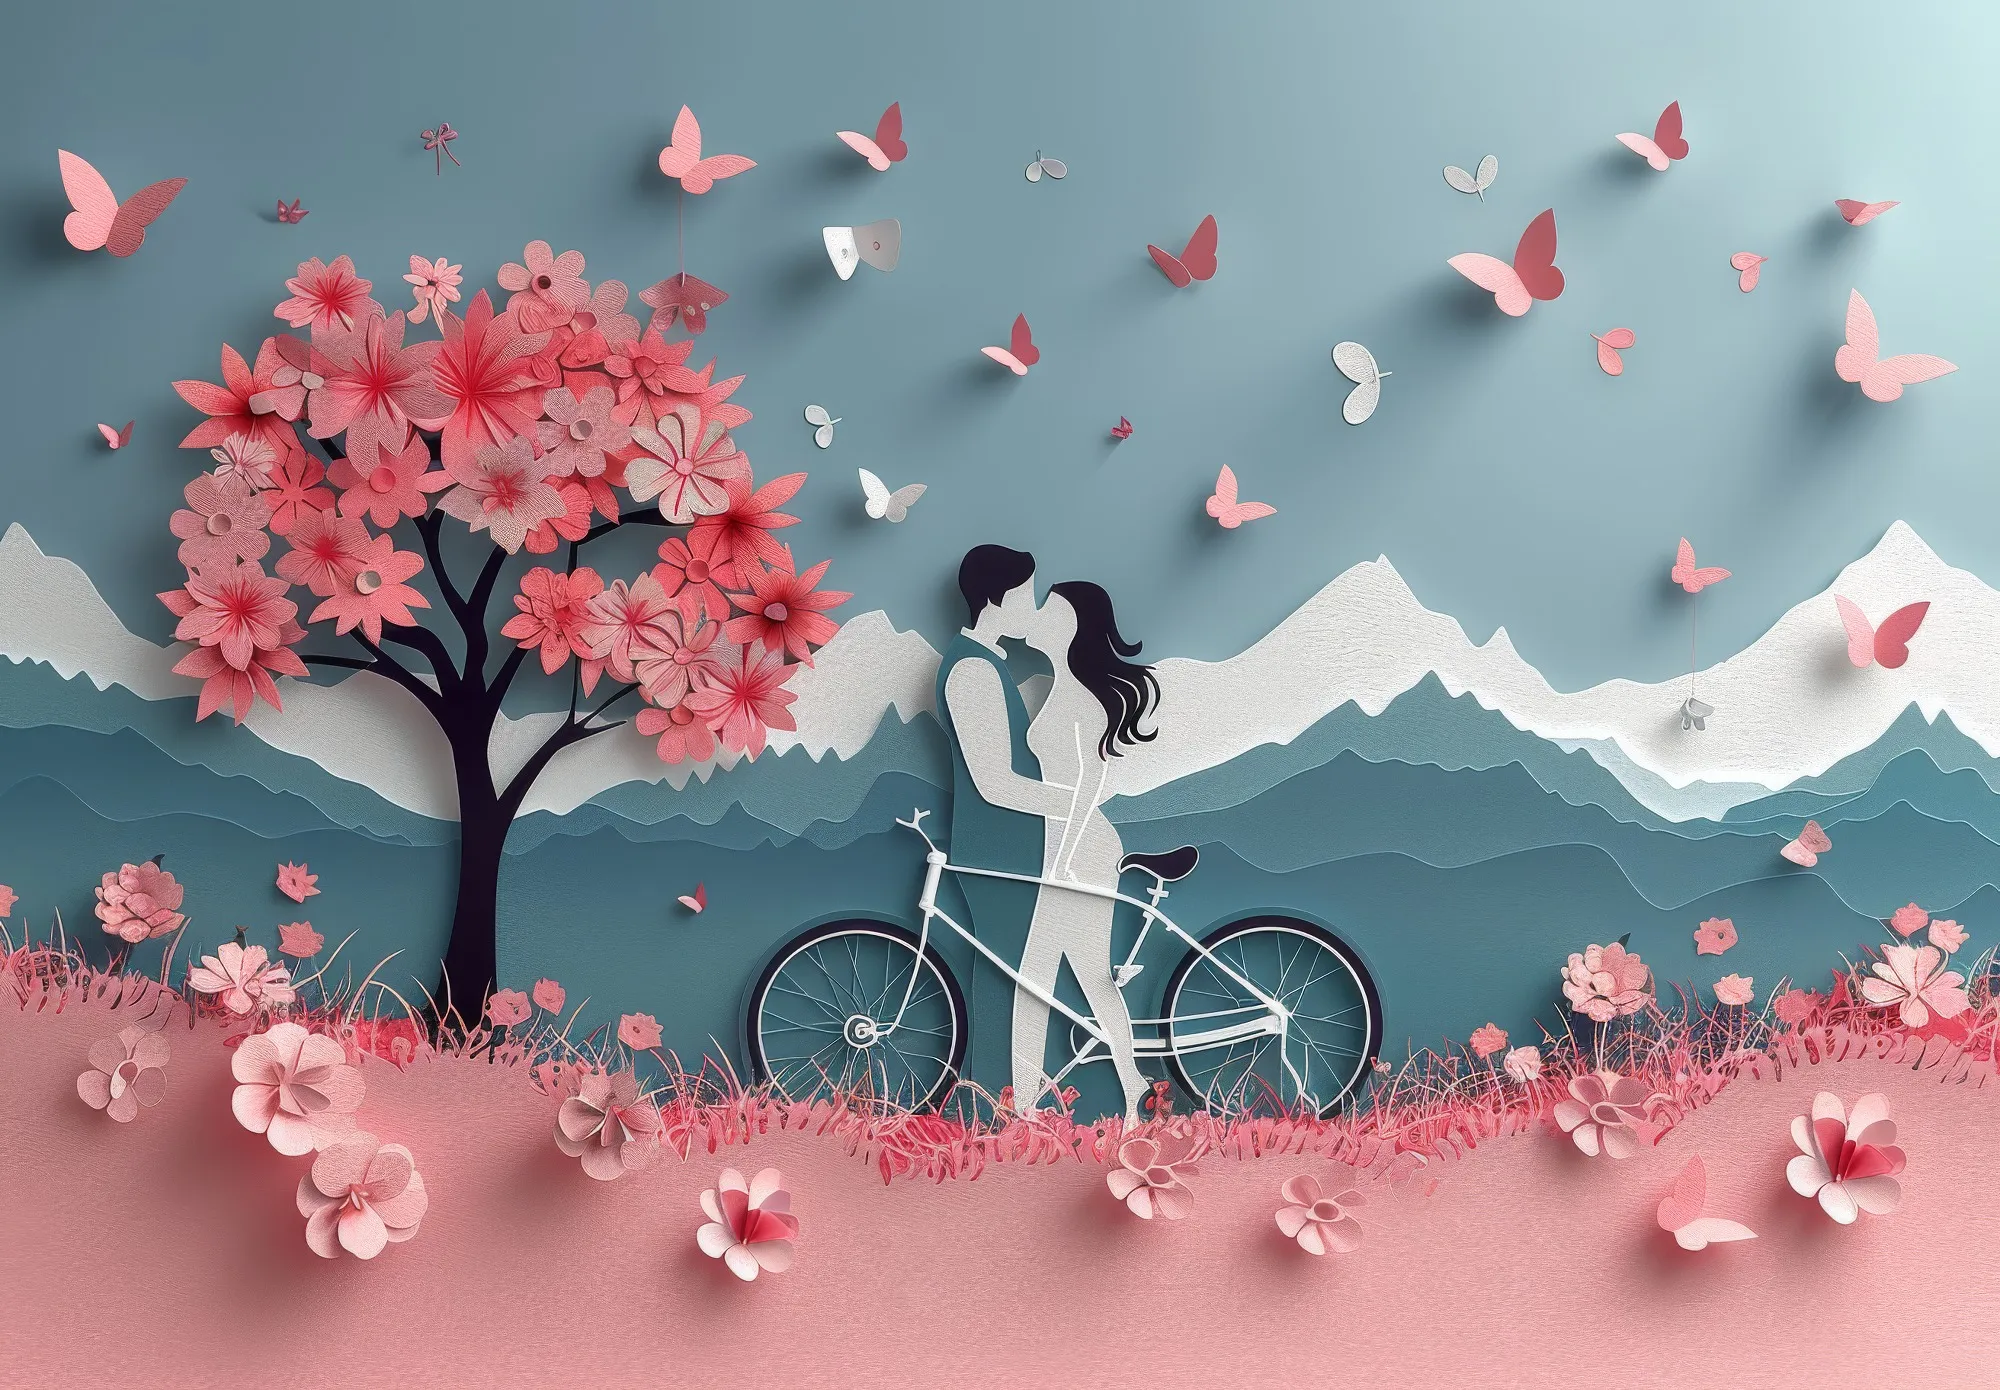 Frases de amor: hermosas y cortas frases: corazones hechos a mano y bicicleta con pareja.